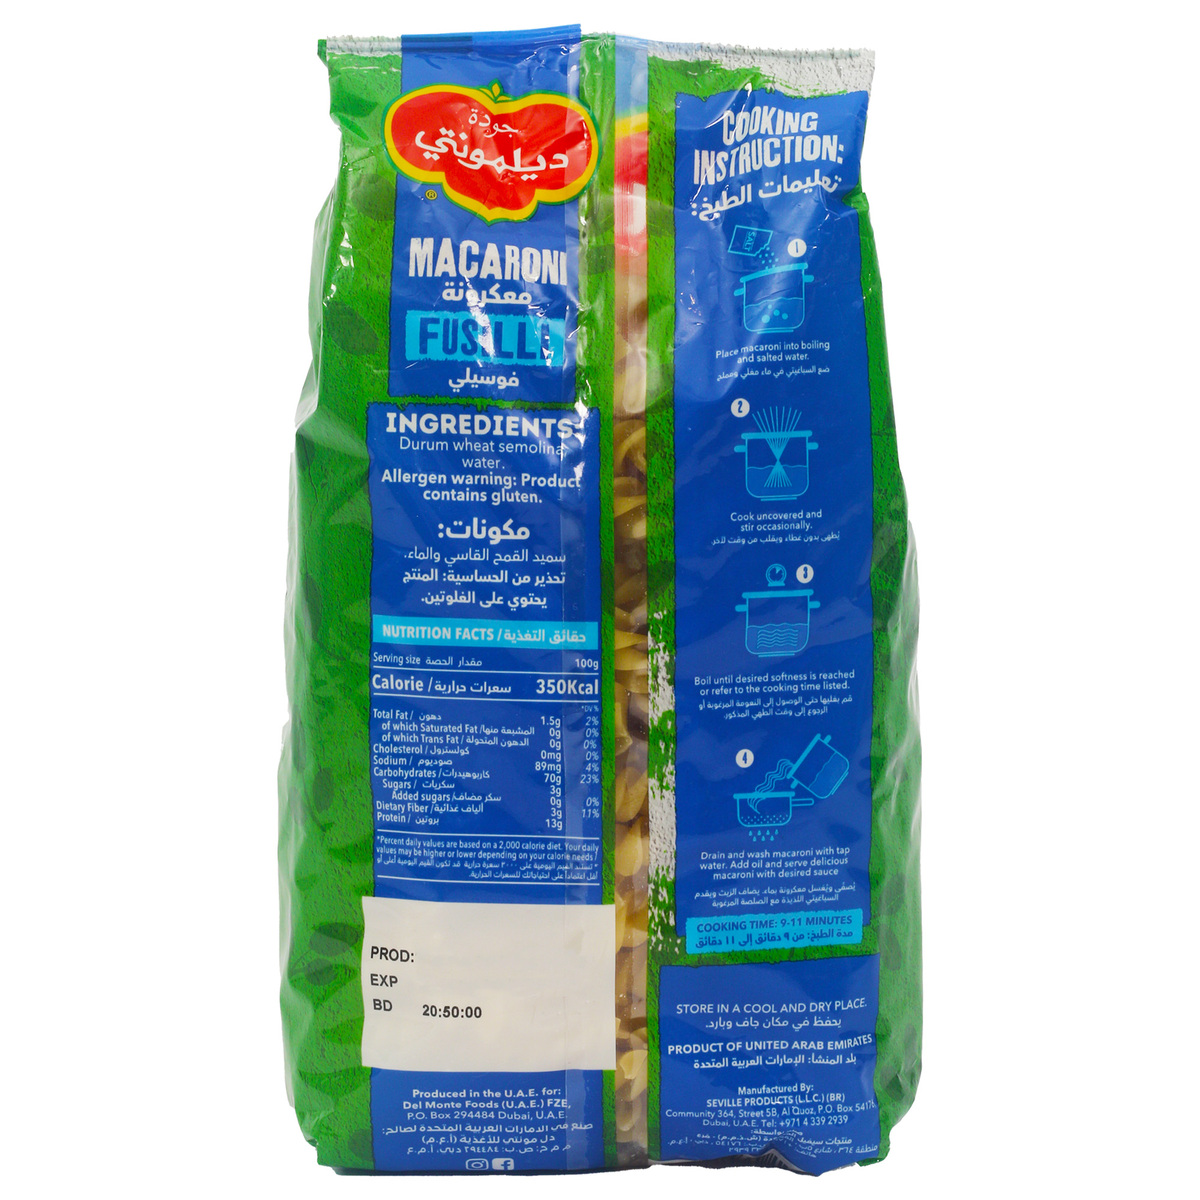 Del Monte Macaroni Fusilli Value Pack 3 x 400 g